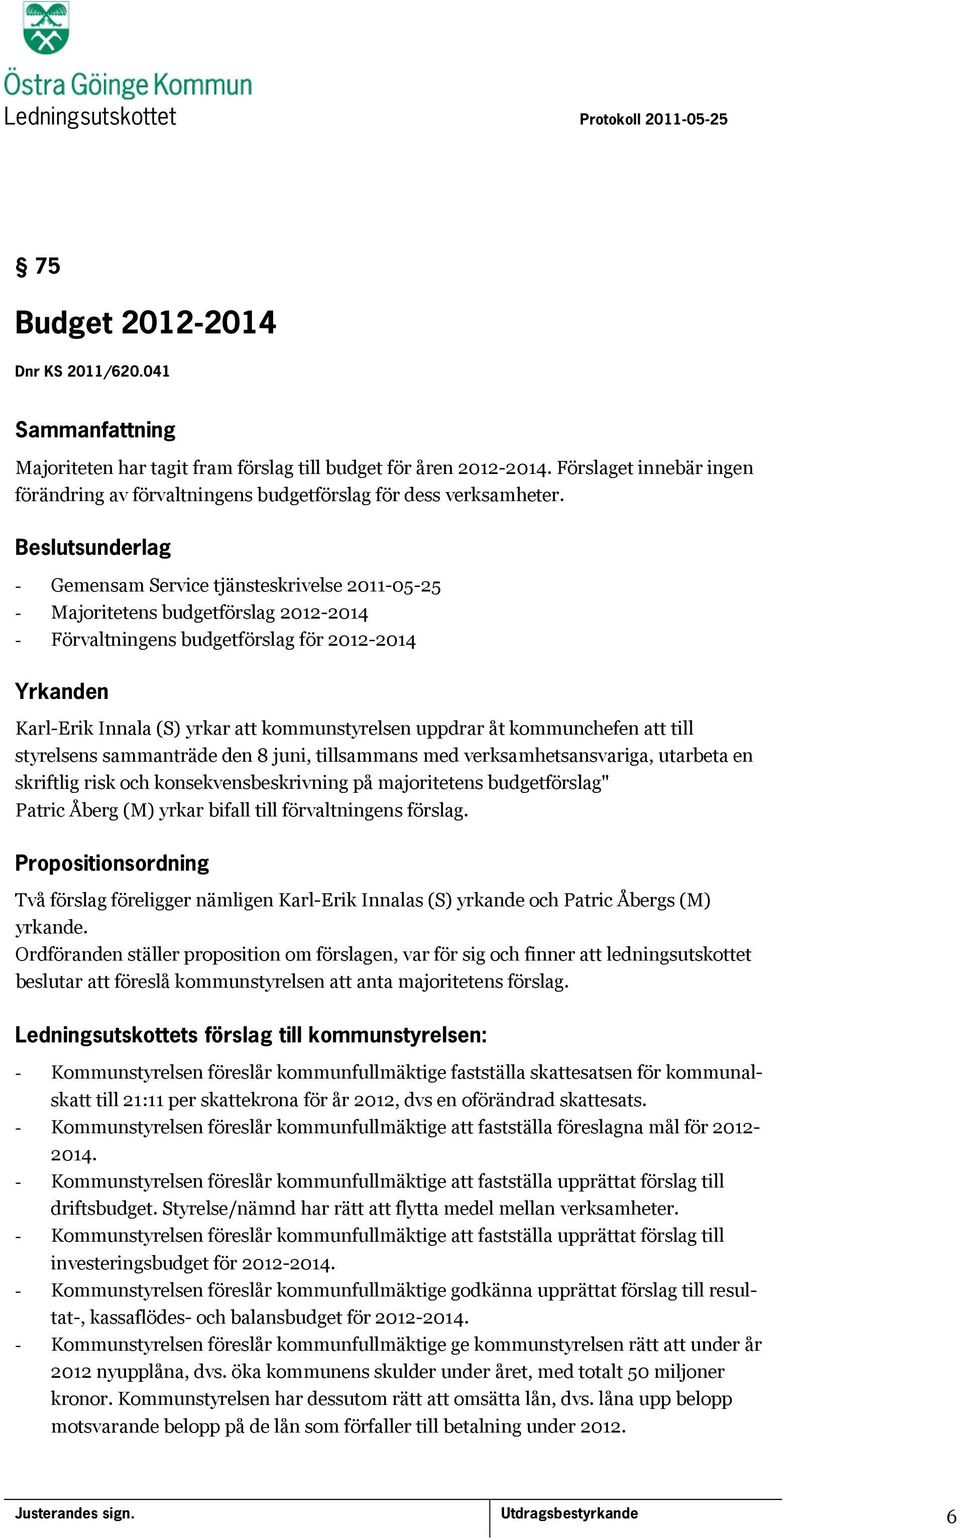 kommunchefen att till styrelsens sammanträde den 8 juni, tillsammans med verksamhetsansvariga, utarbeta en skriftlig risk och konsekvensbeskrivning på majoritetens budgetförslag" Patric Åberg (M)